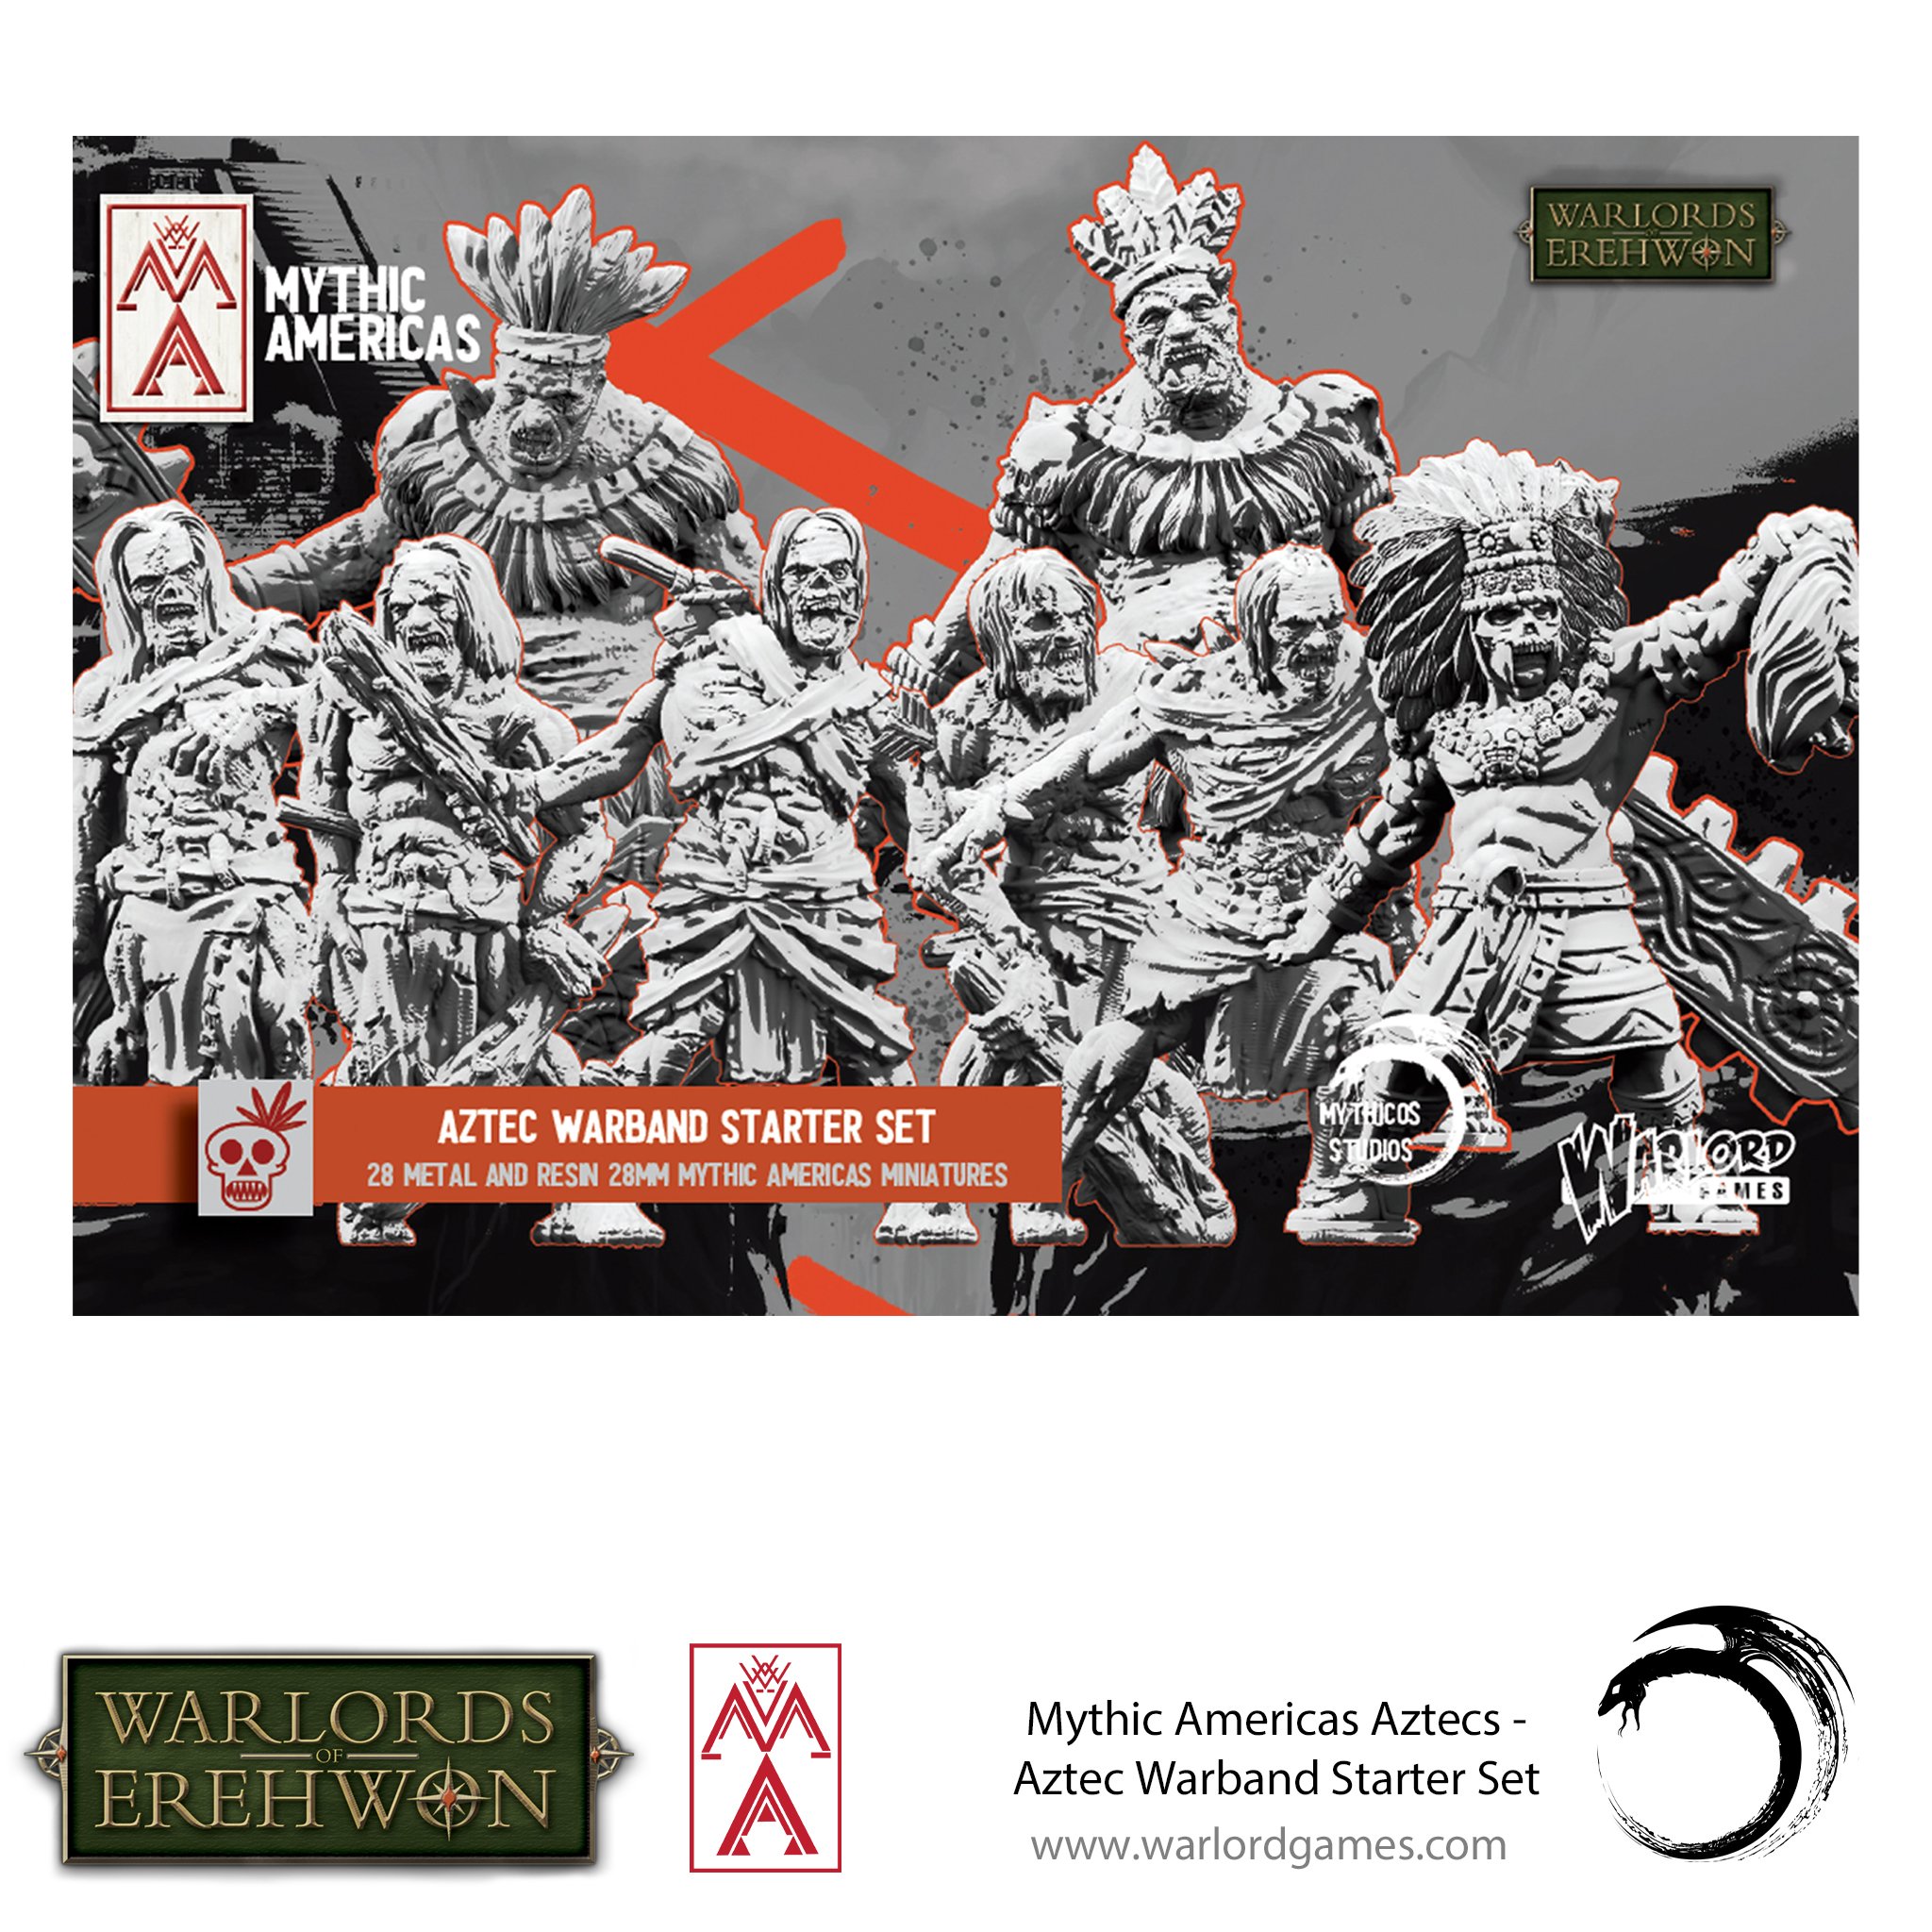 Warlords of Erehwon: Mythic Americas- Aztecs: Warband Starter Set 